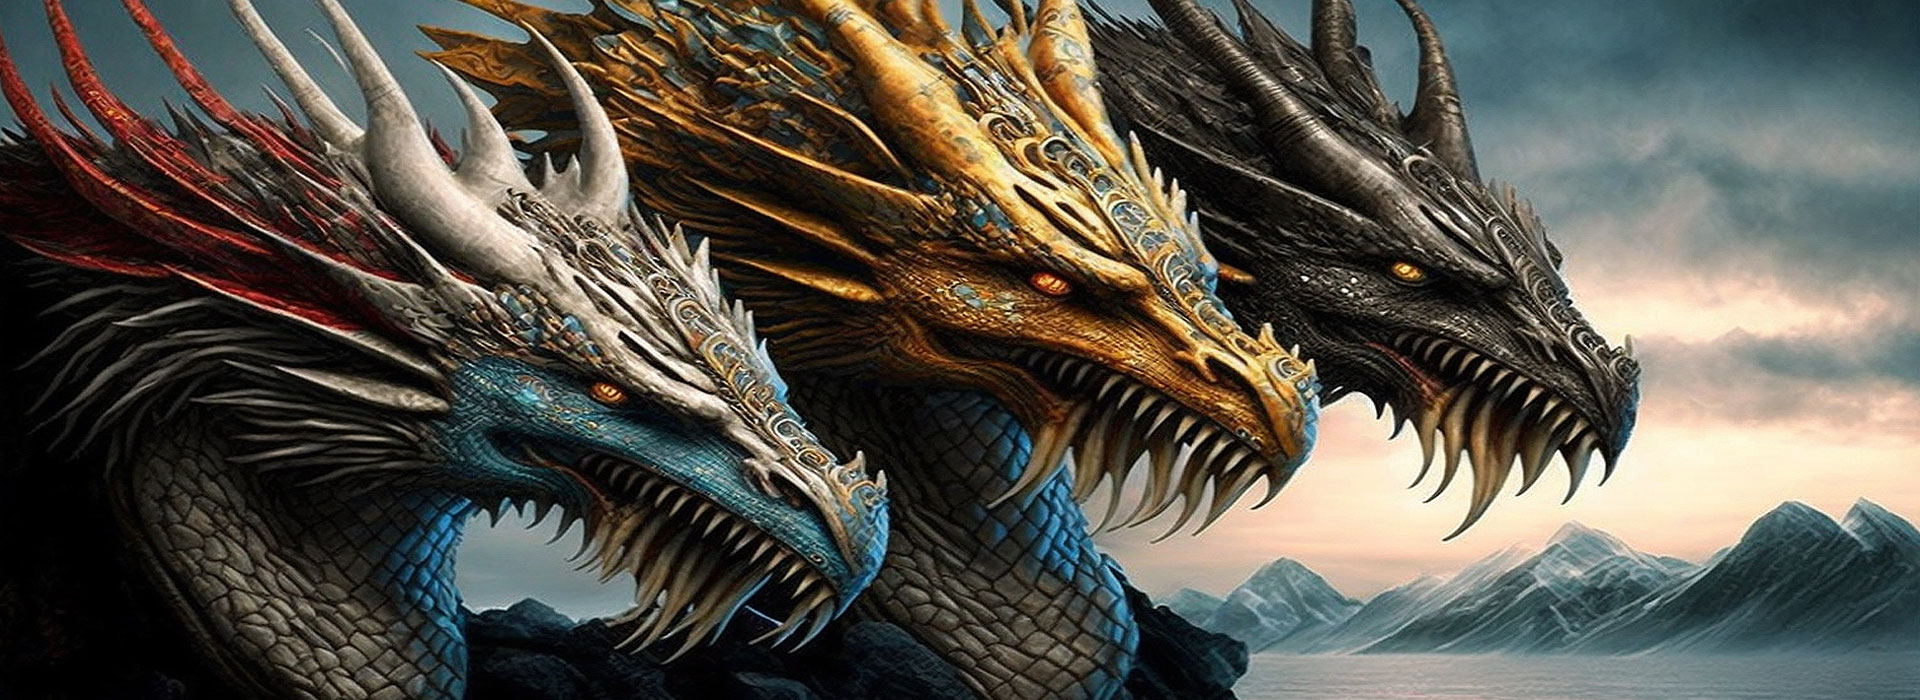 dragons viking